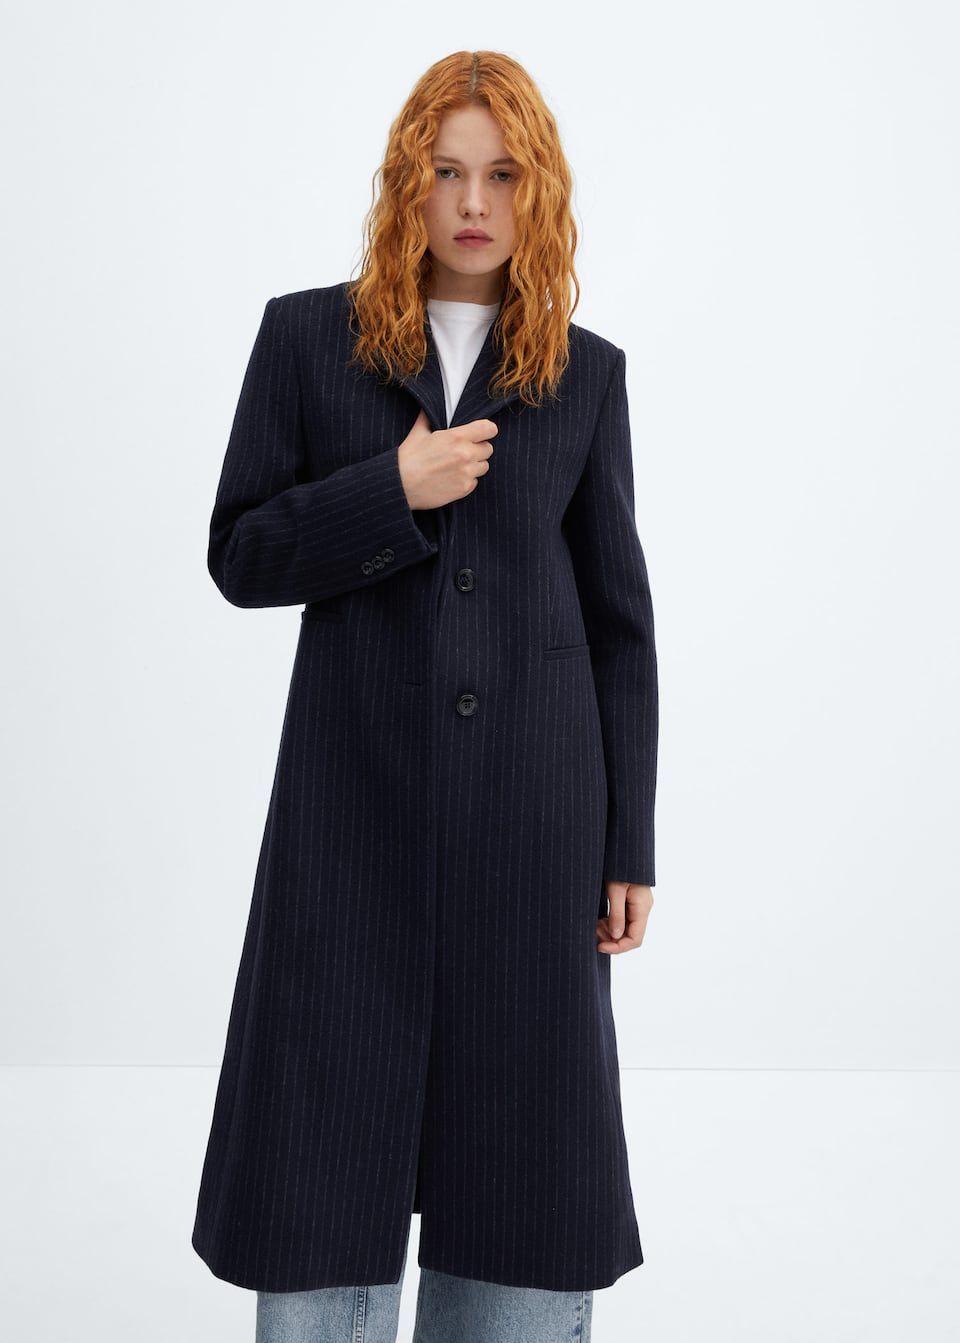 Striped wool coat